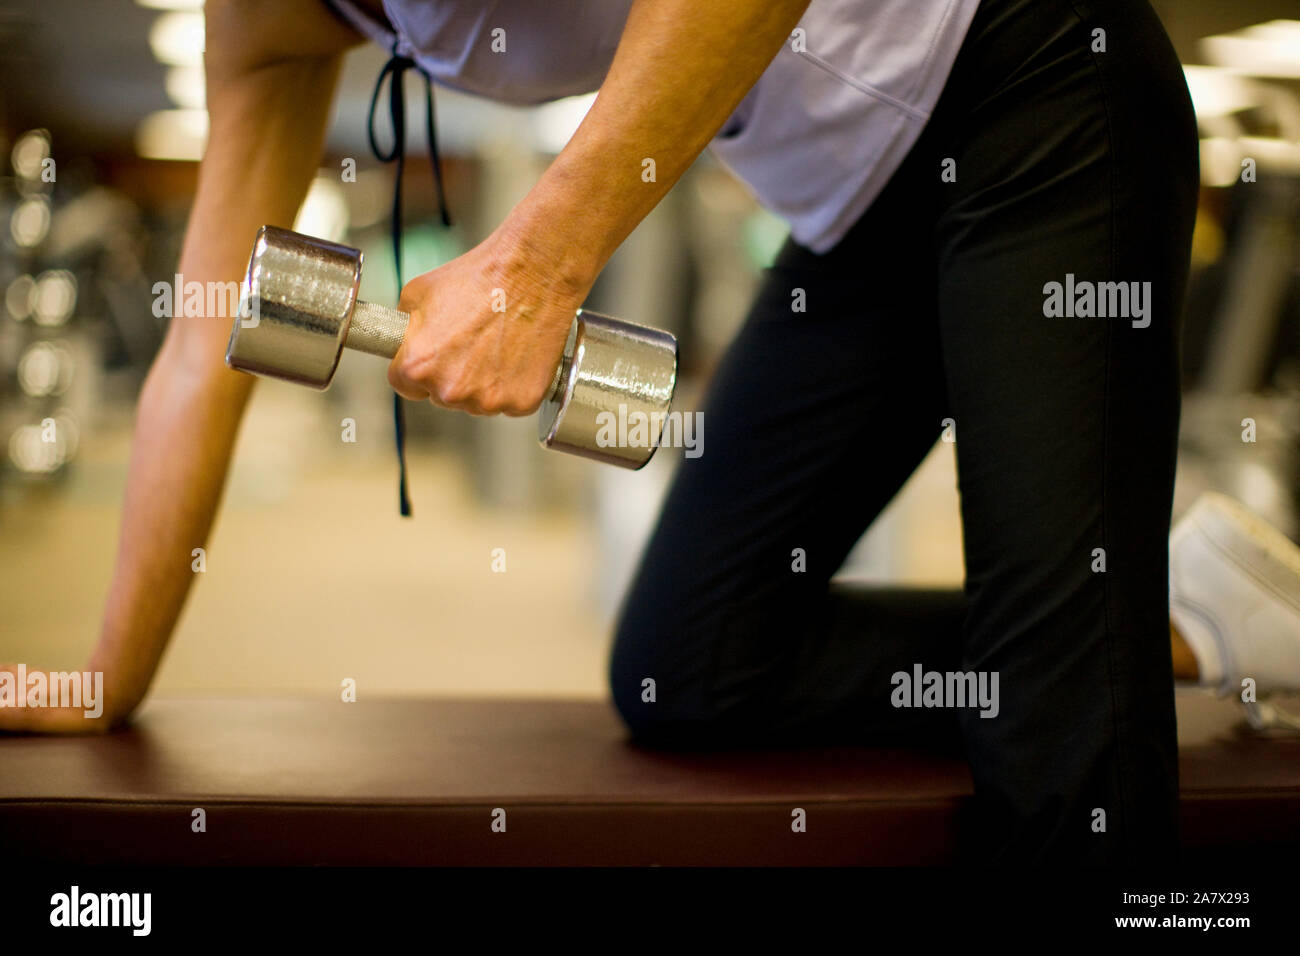 Woman's Arm heben einer hand Gewicht, kniend auf einer Bank in einem  Fitnessstudio Stockfotografie - Alamy